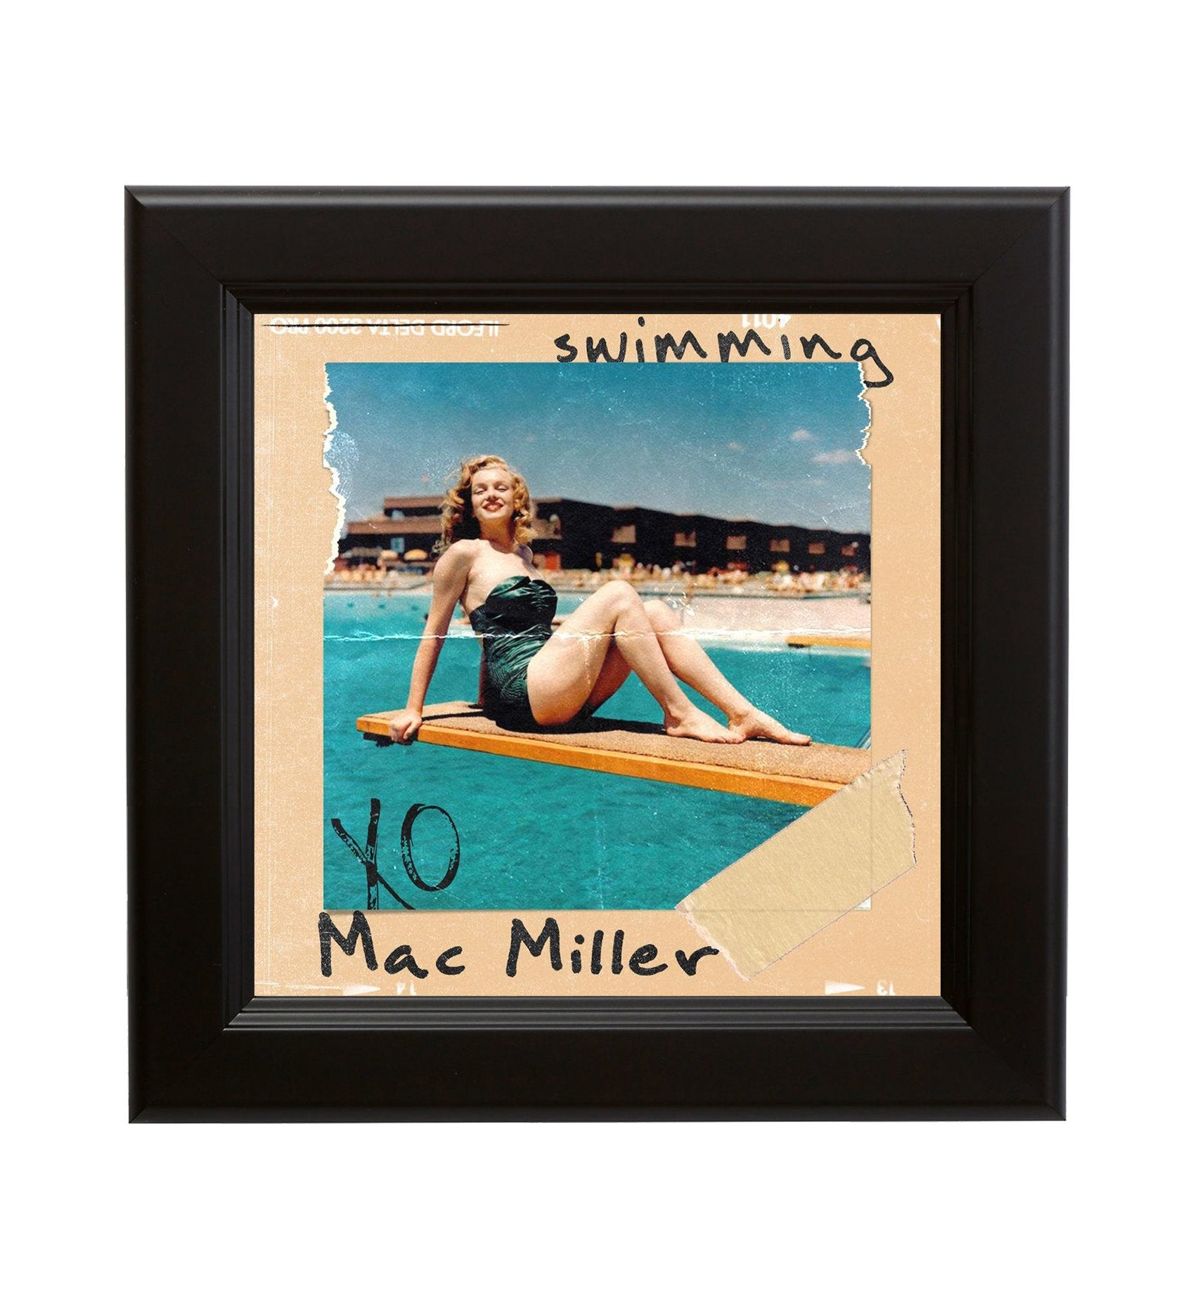 mac miller swimming album cover poster